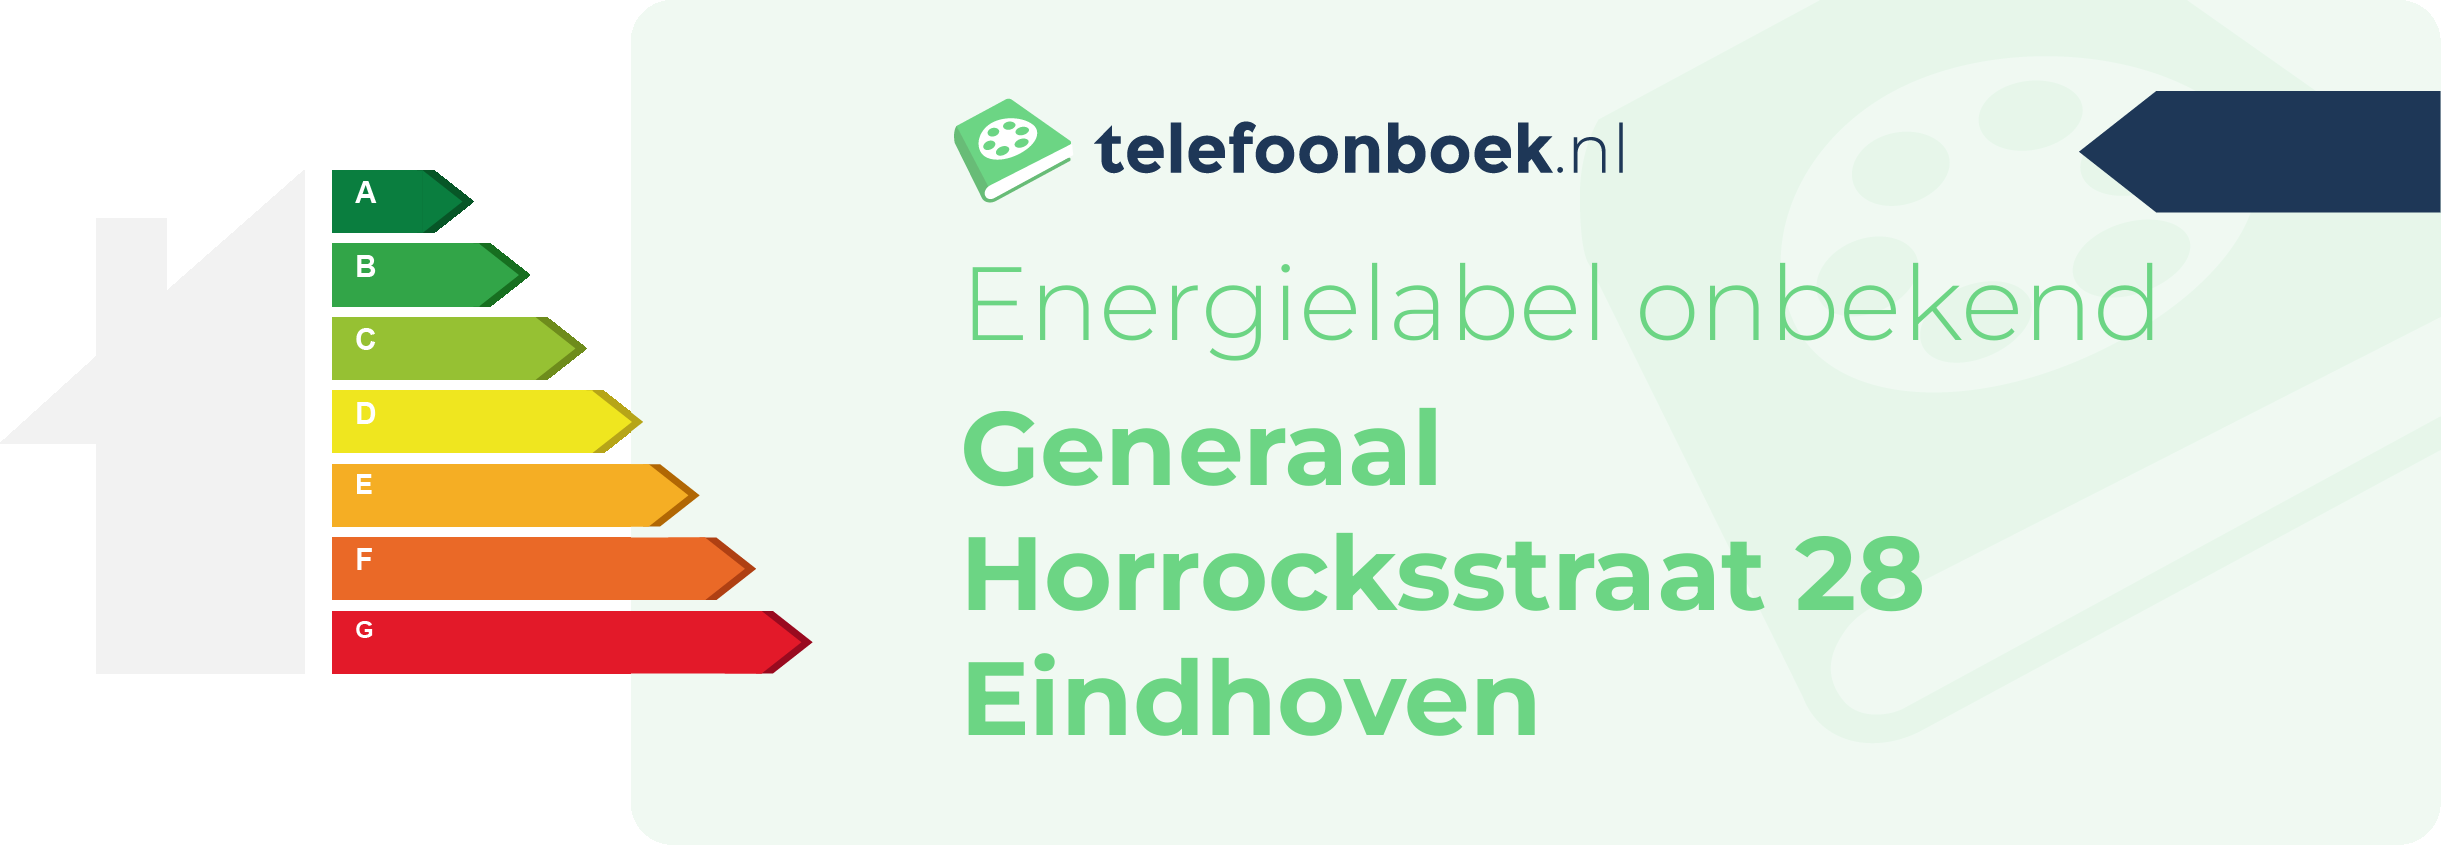 Energielabel Generaal Horrocksstraat 28 Eindhoven